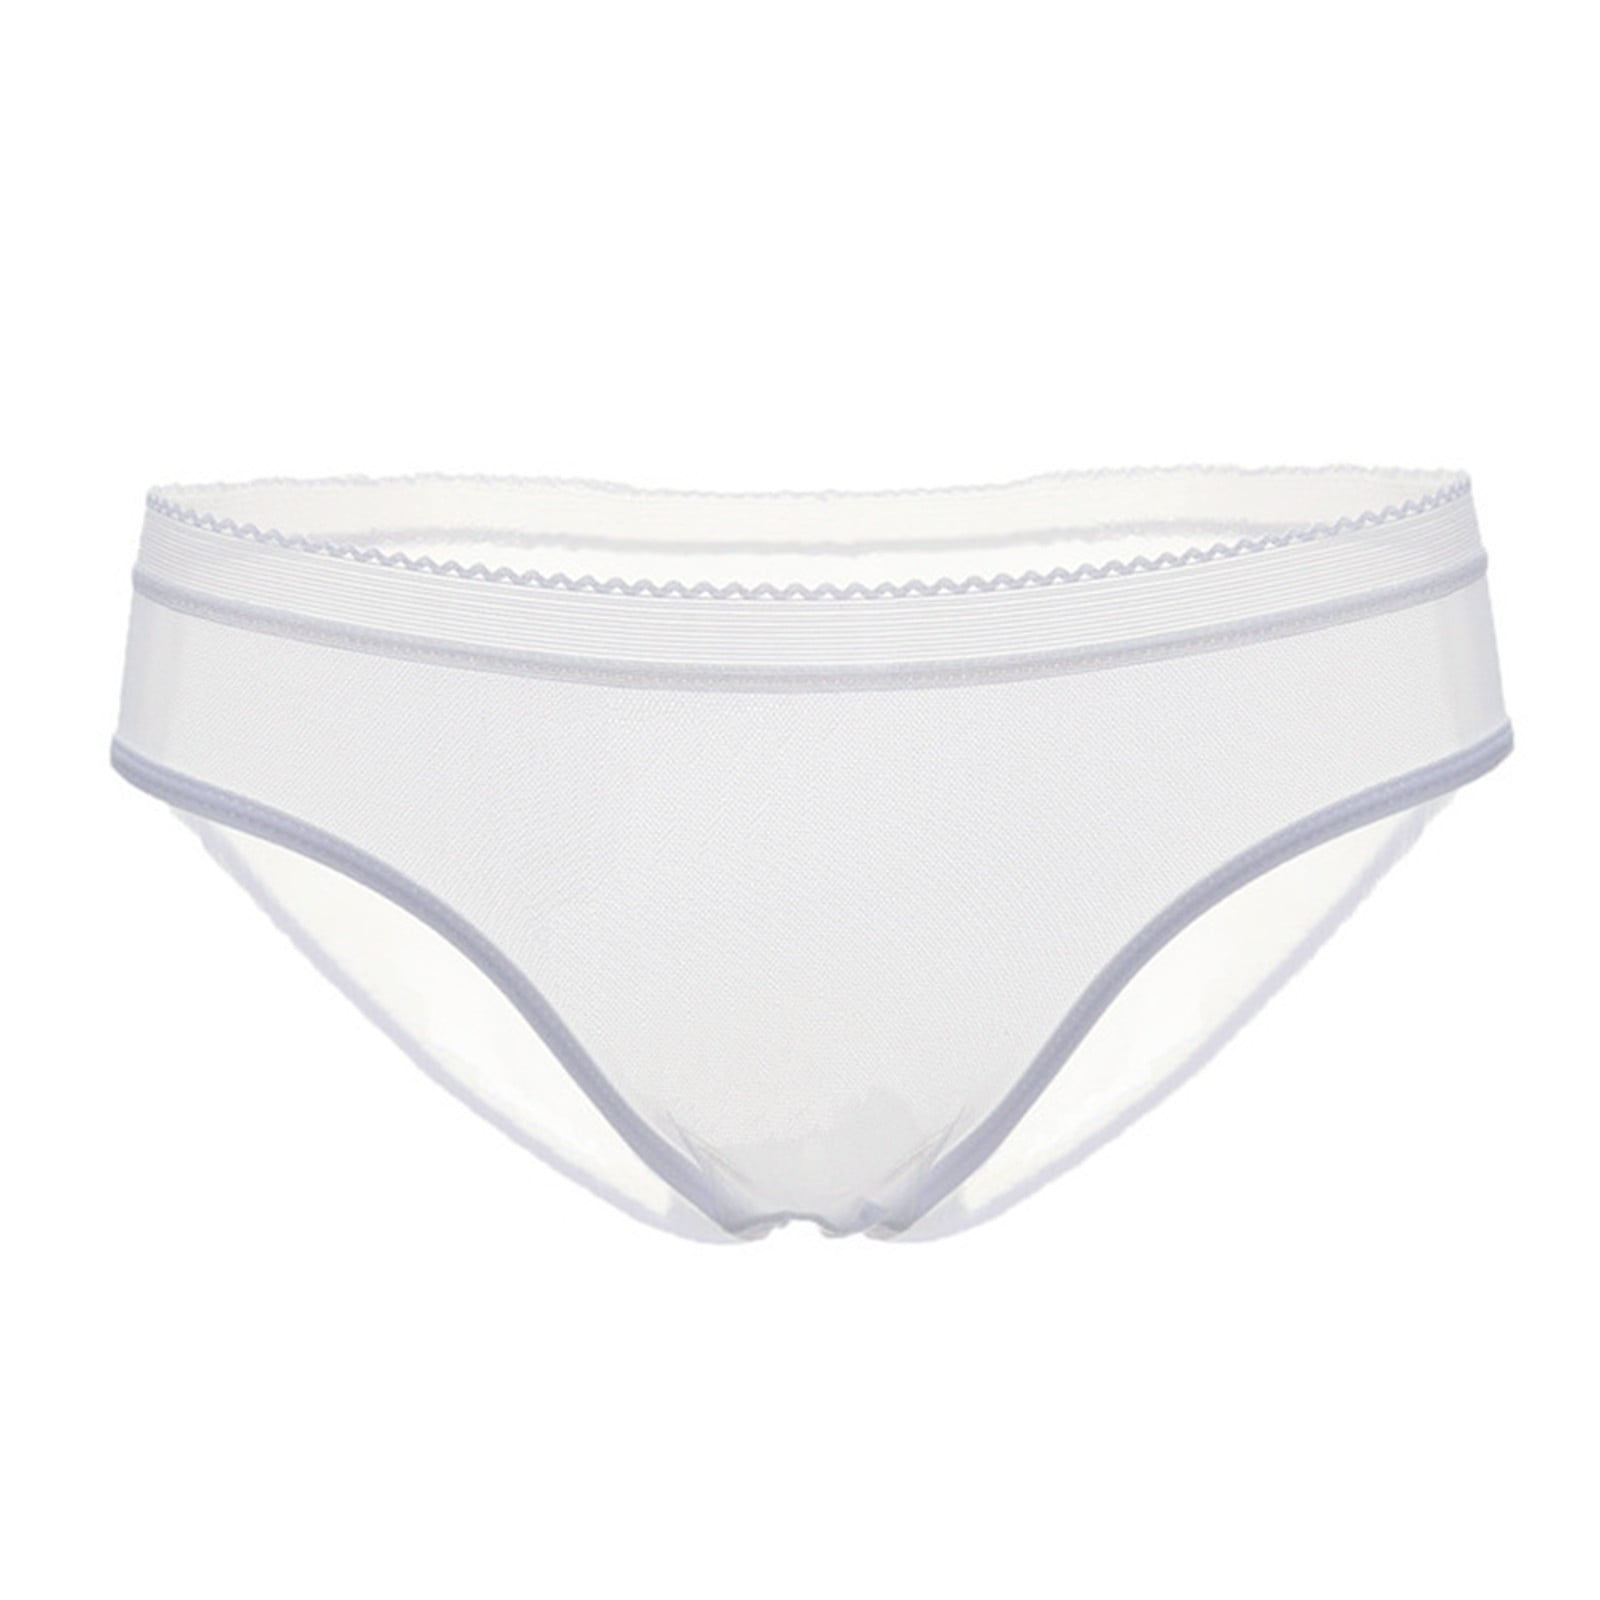 ZMHEGW Womens Underwear Mesh Briefs Hollow Out Lingerie Breathable Comfort  Underpants Transparent Plus Size Women's Panties